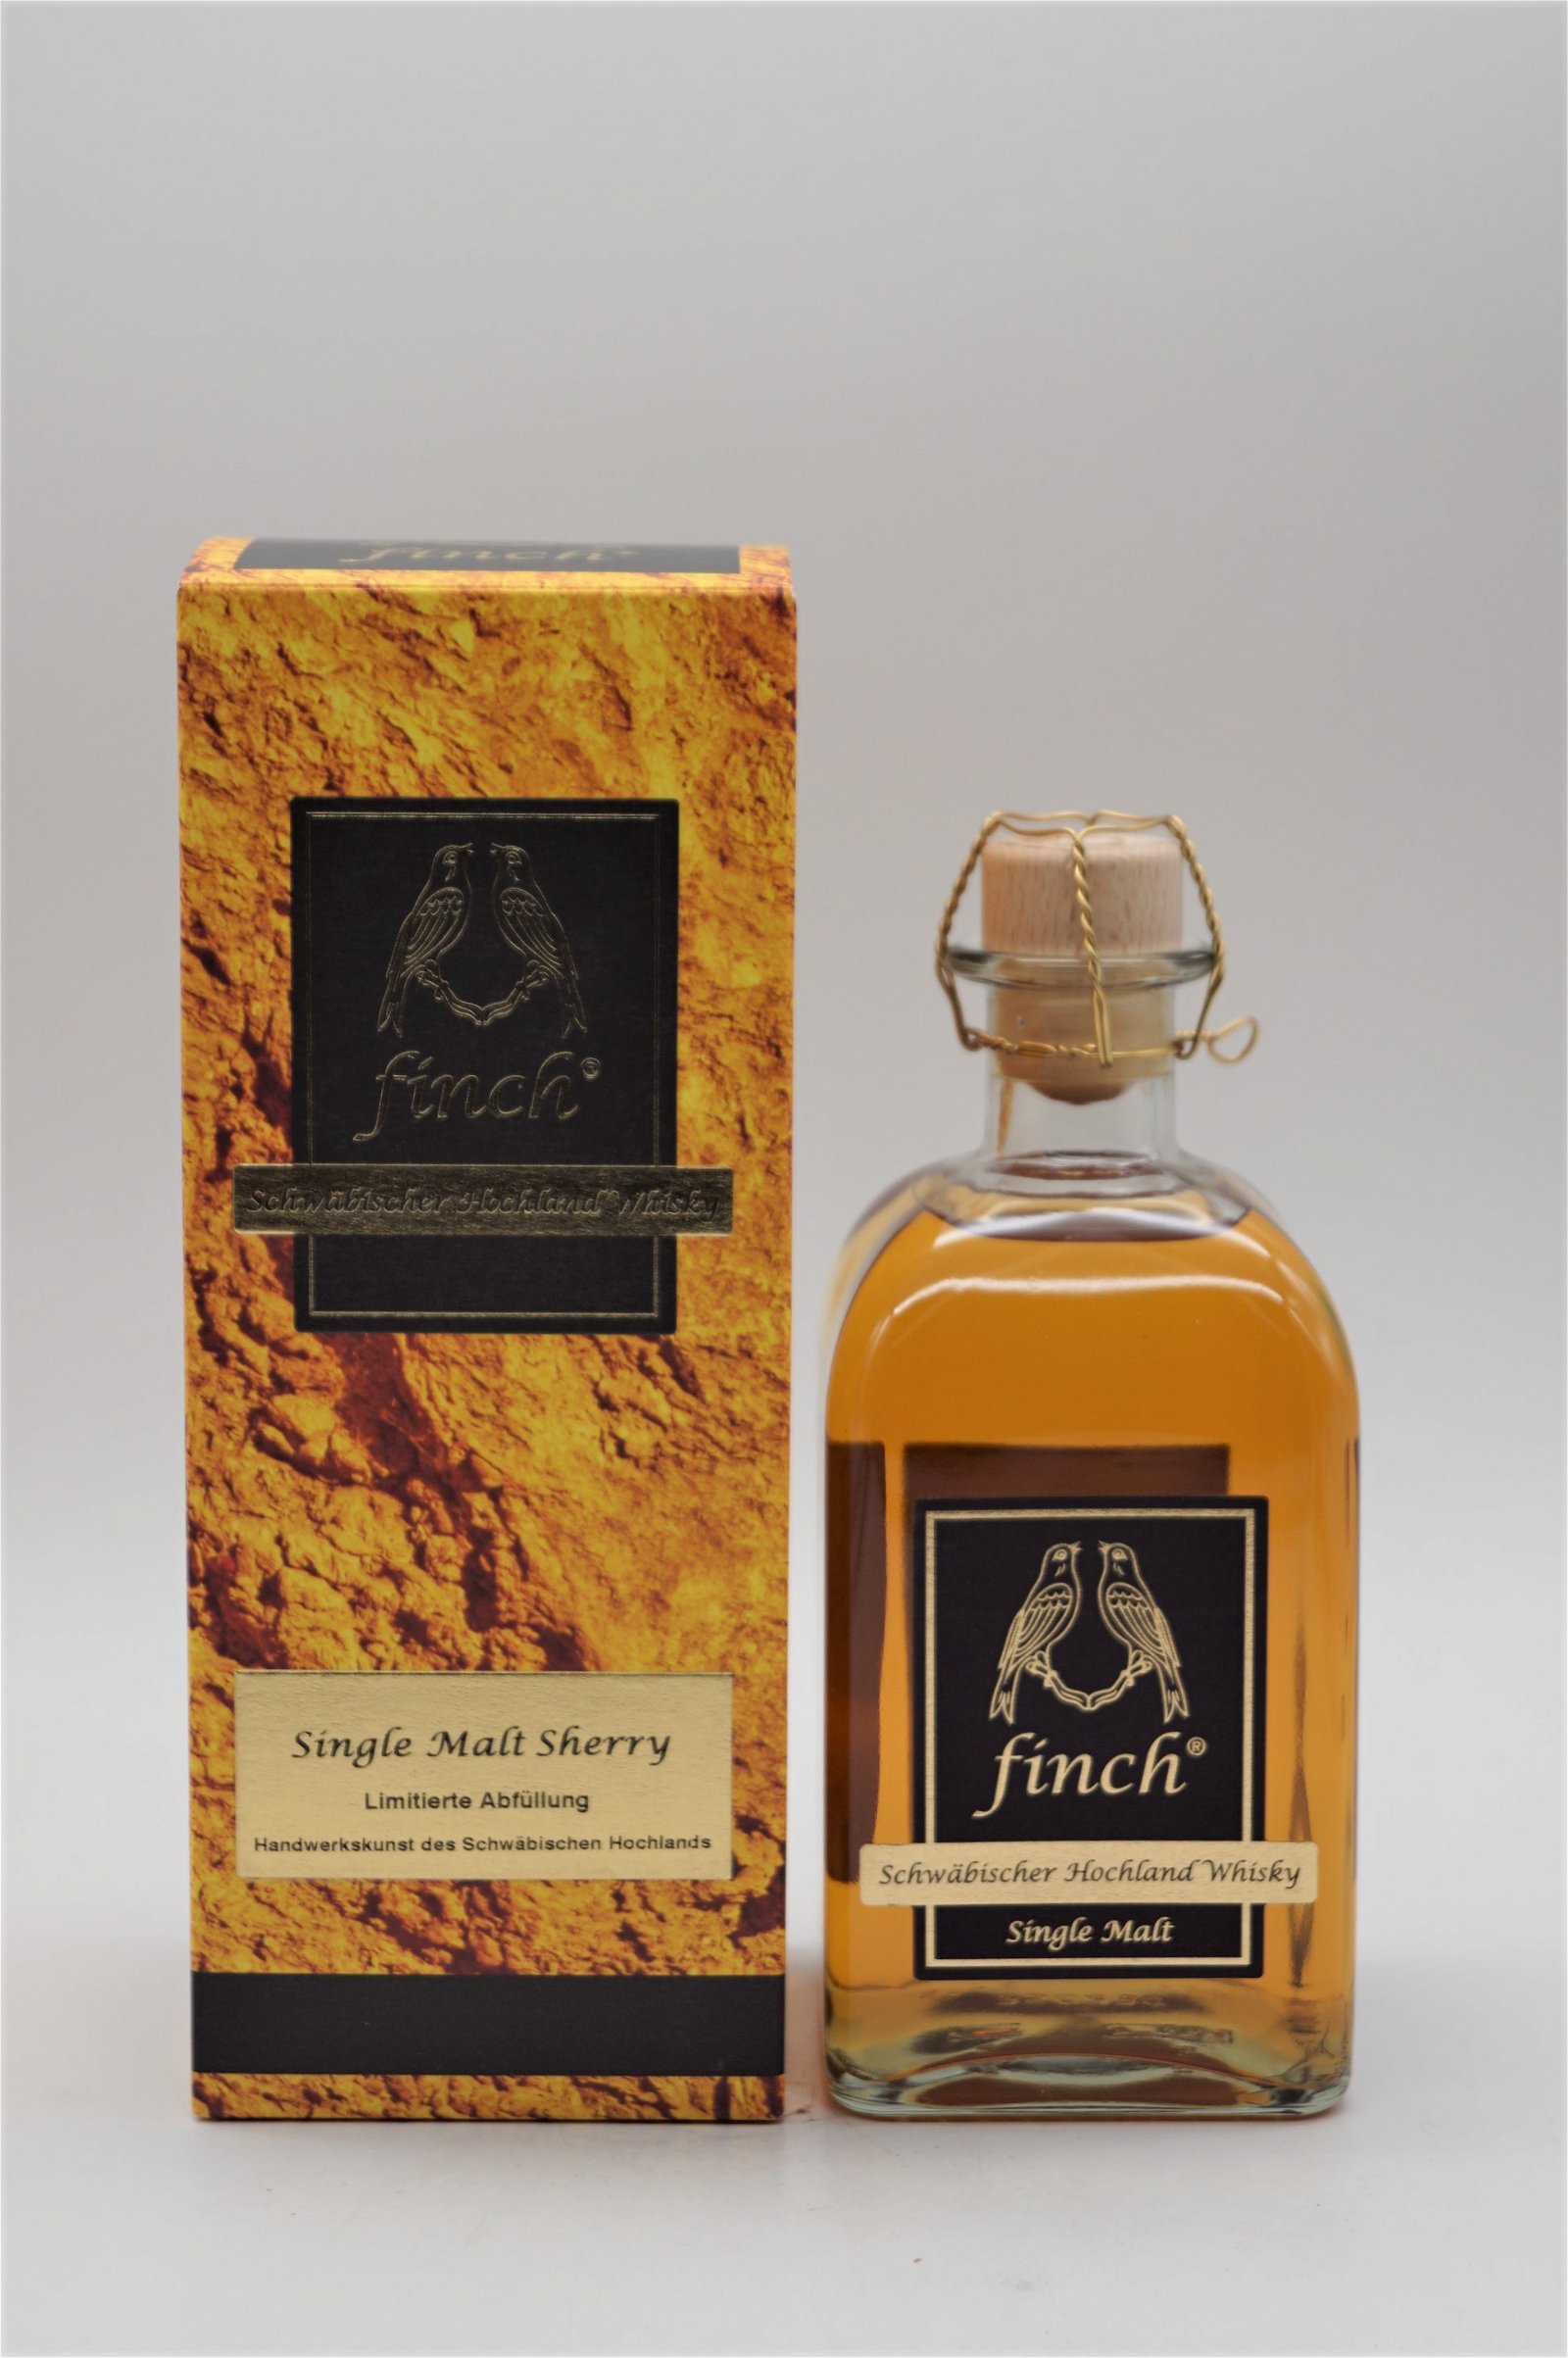 Finch Single Malt Sherry Schwäbischer Hochland Whisky